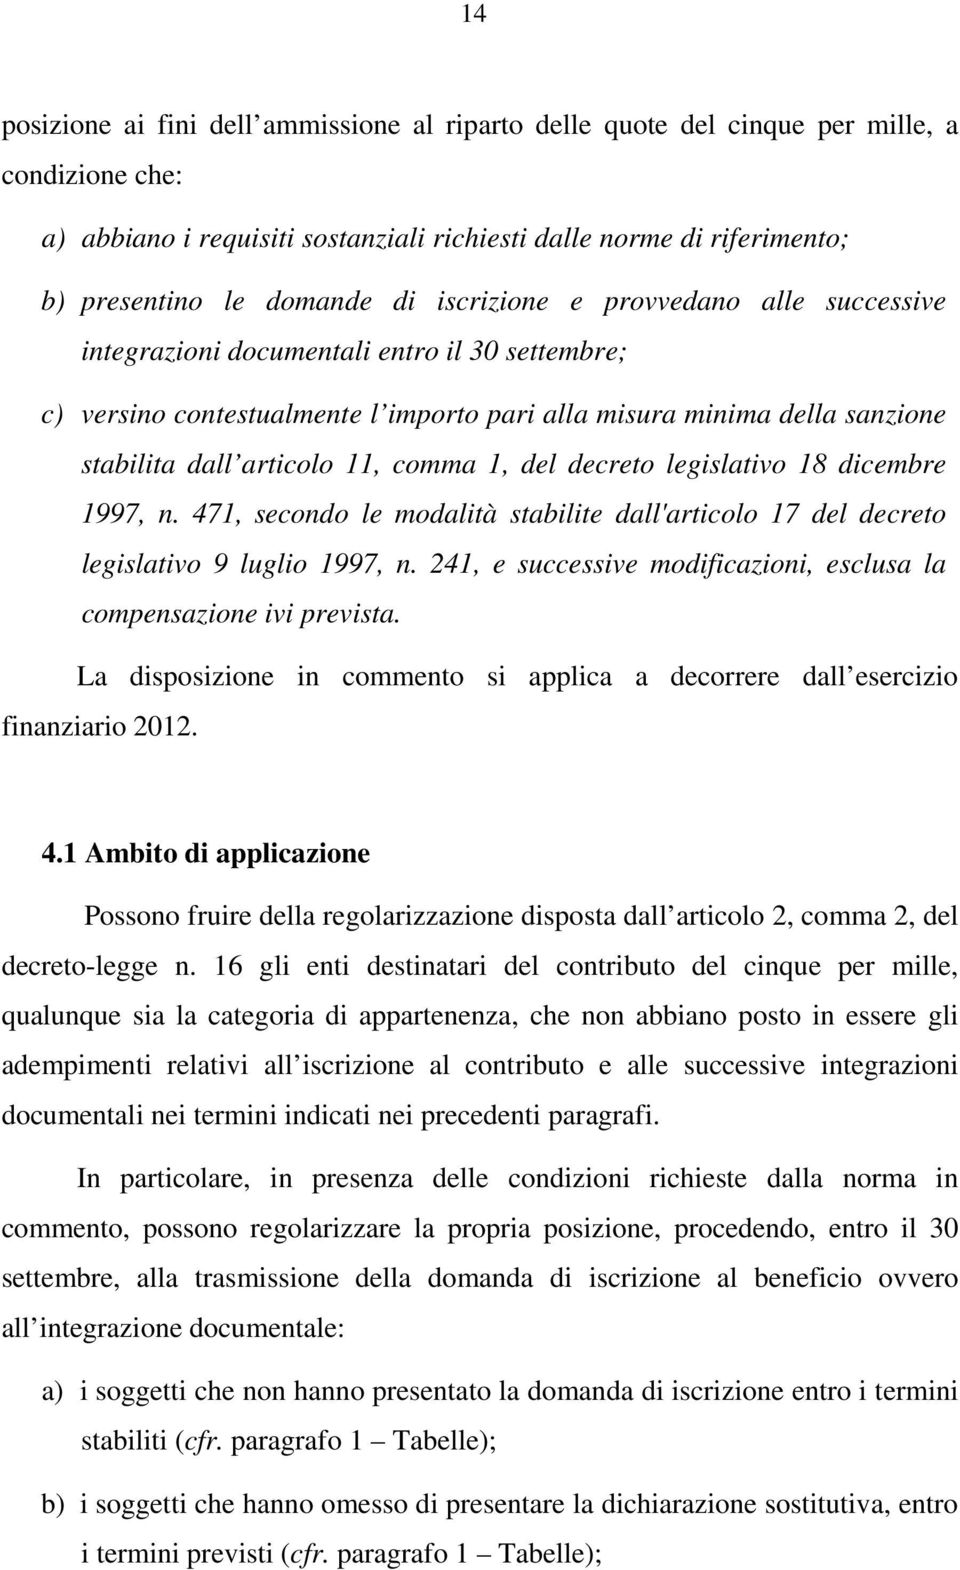 comma 1, del decreto legislativo 18 dicembre 1997, n. 471, secondo le modalità stabilite dall'articolo 17 del decreto legislativo 9 luglio 1997, n.